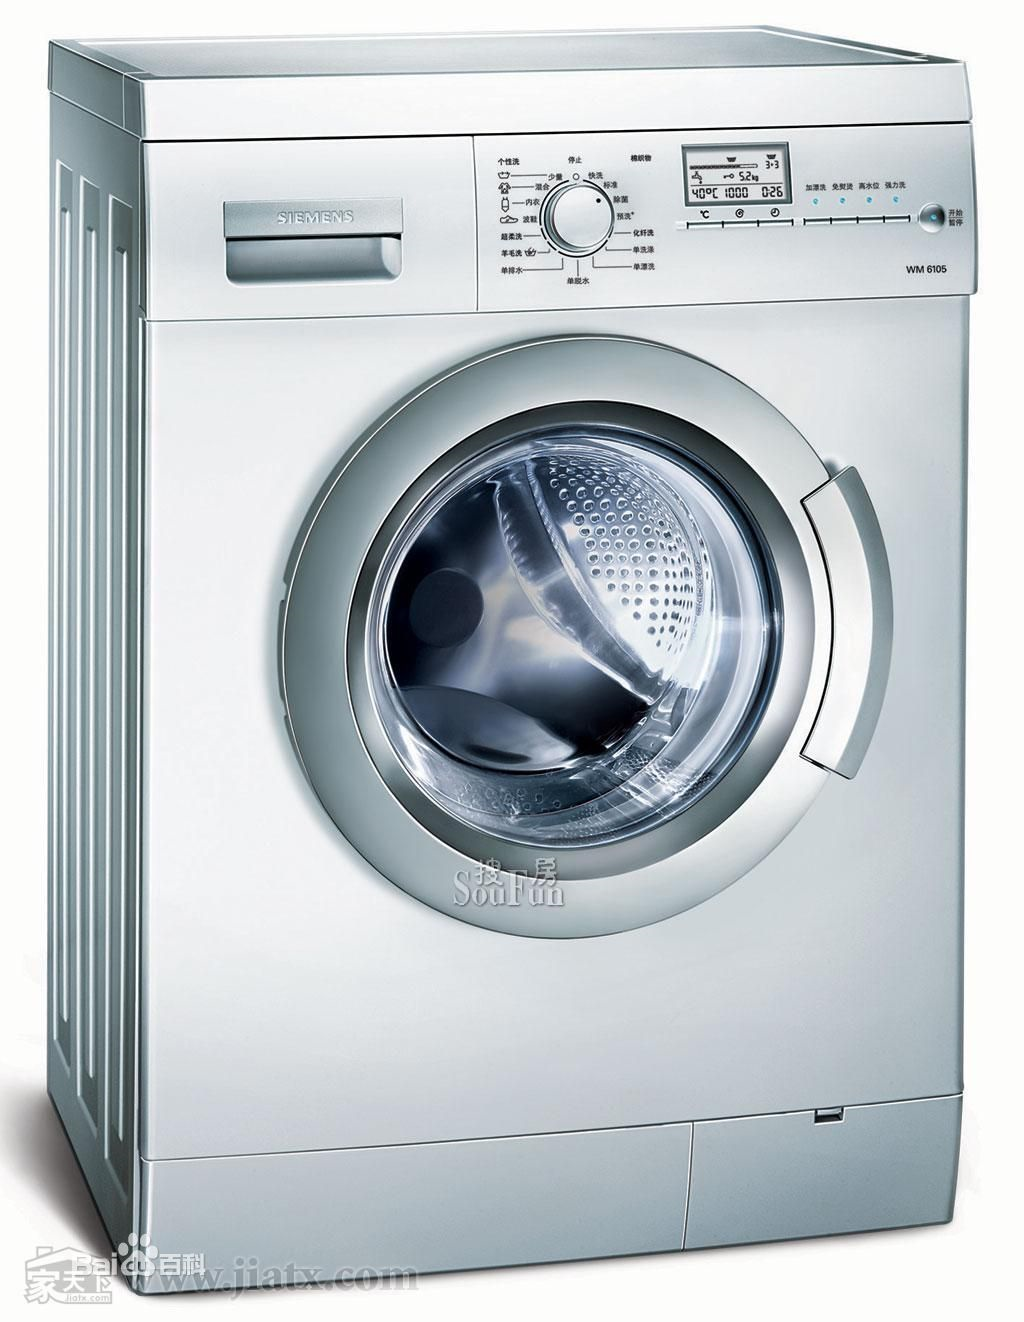 洗净度与磨损率 不同洗衣机差别有哪些